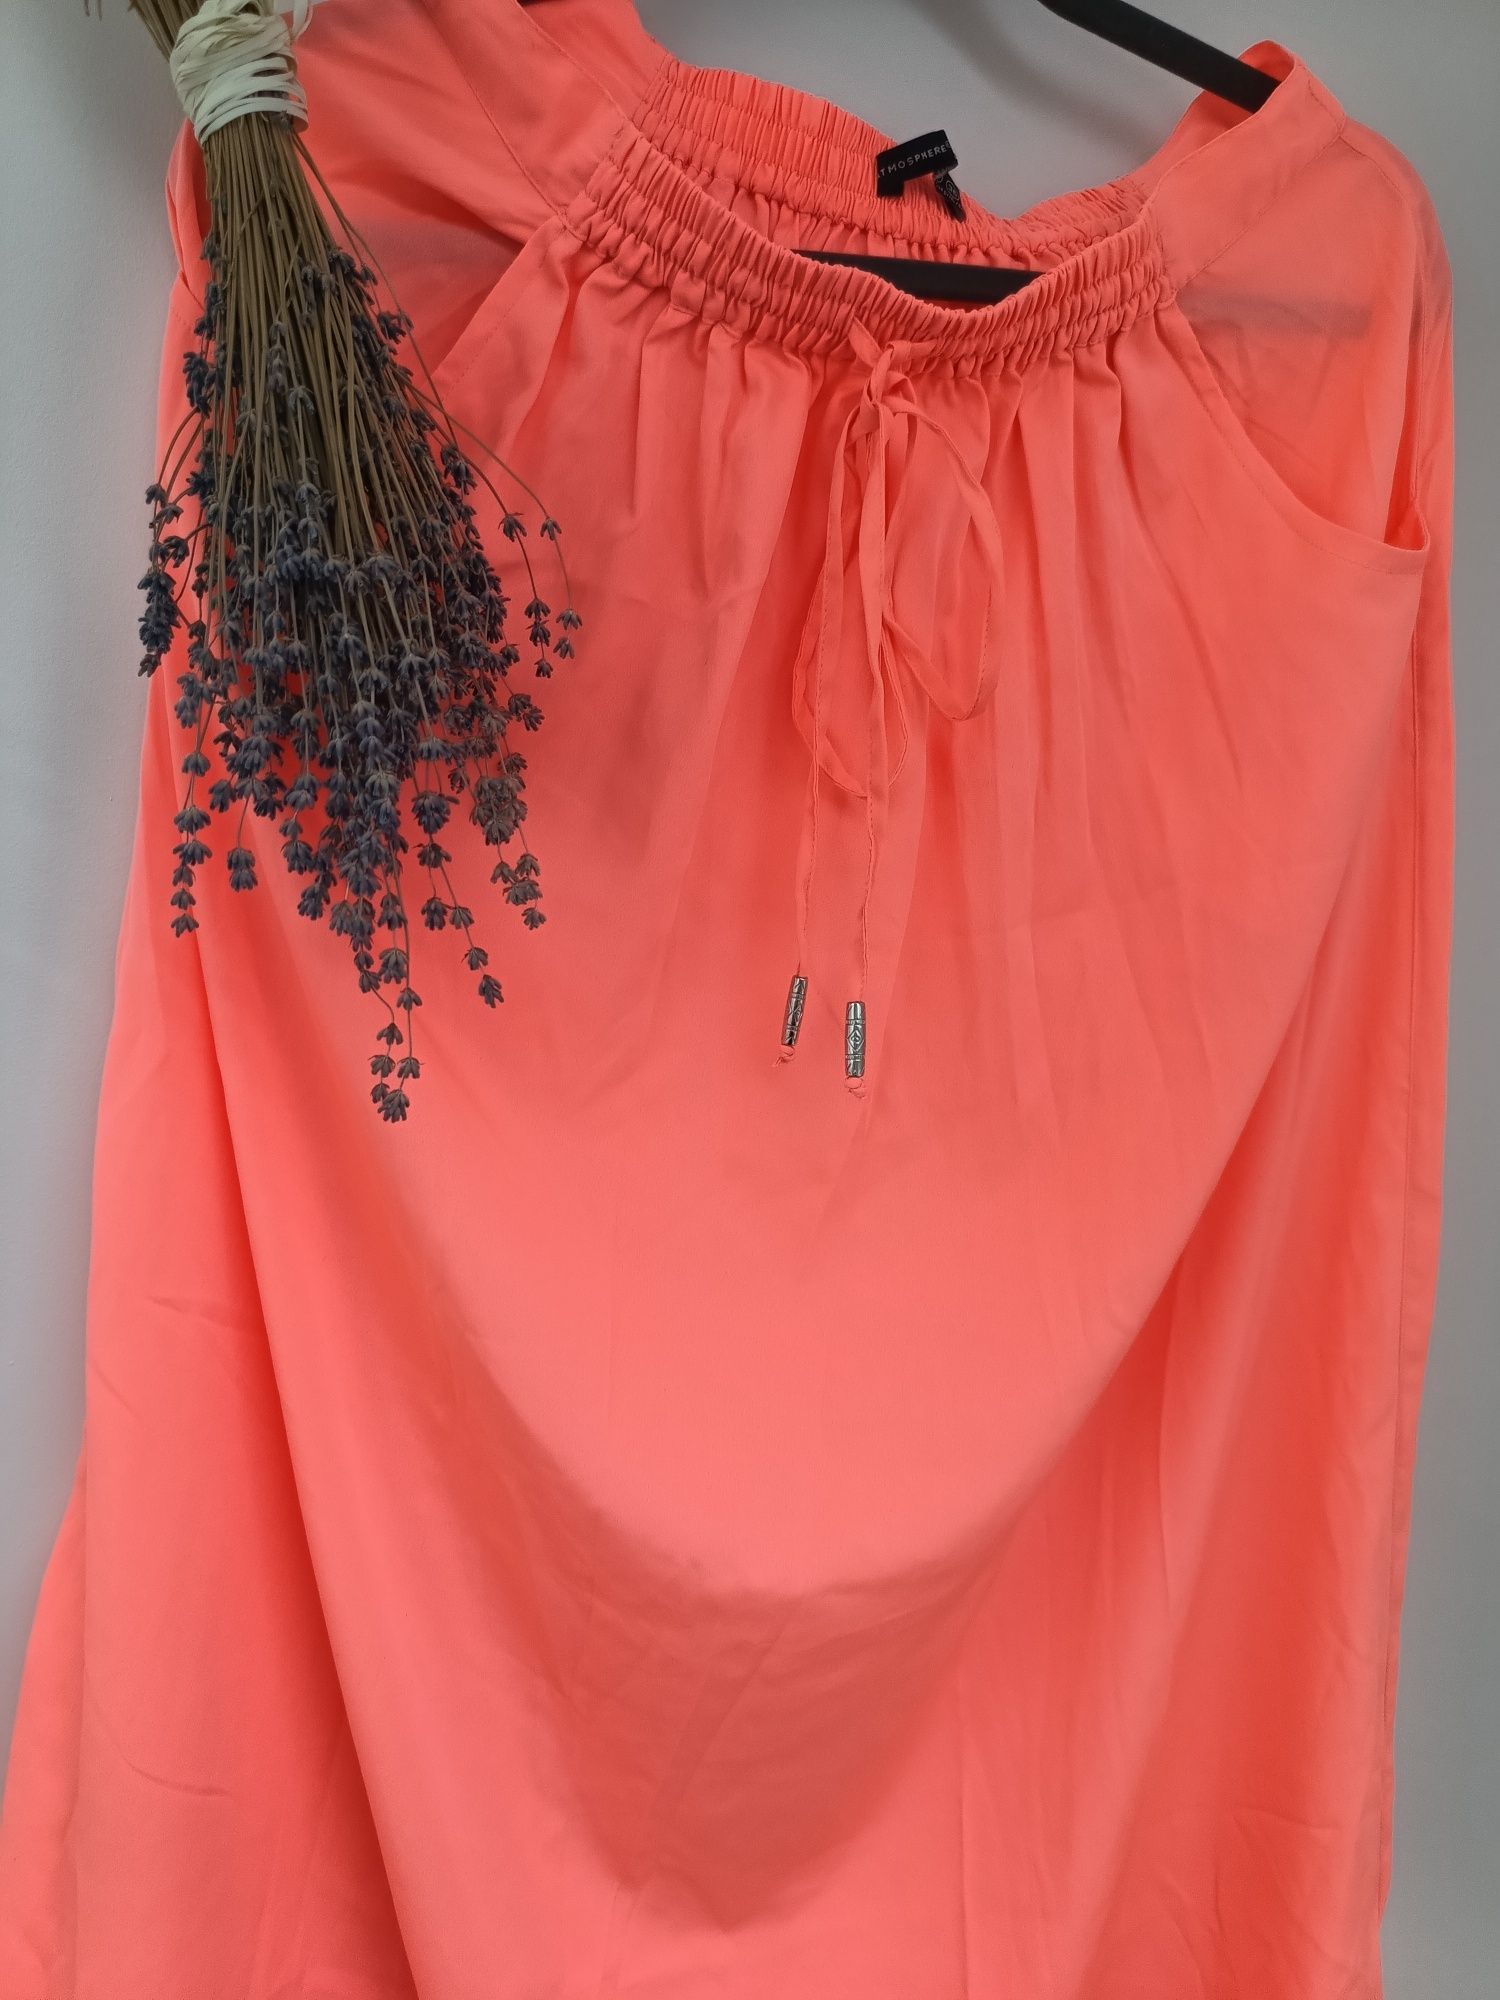 Pomarańczowa neonowa długa spódnica M